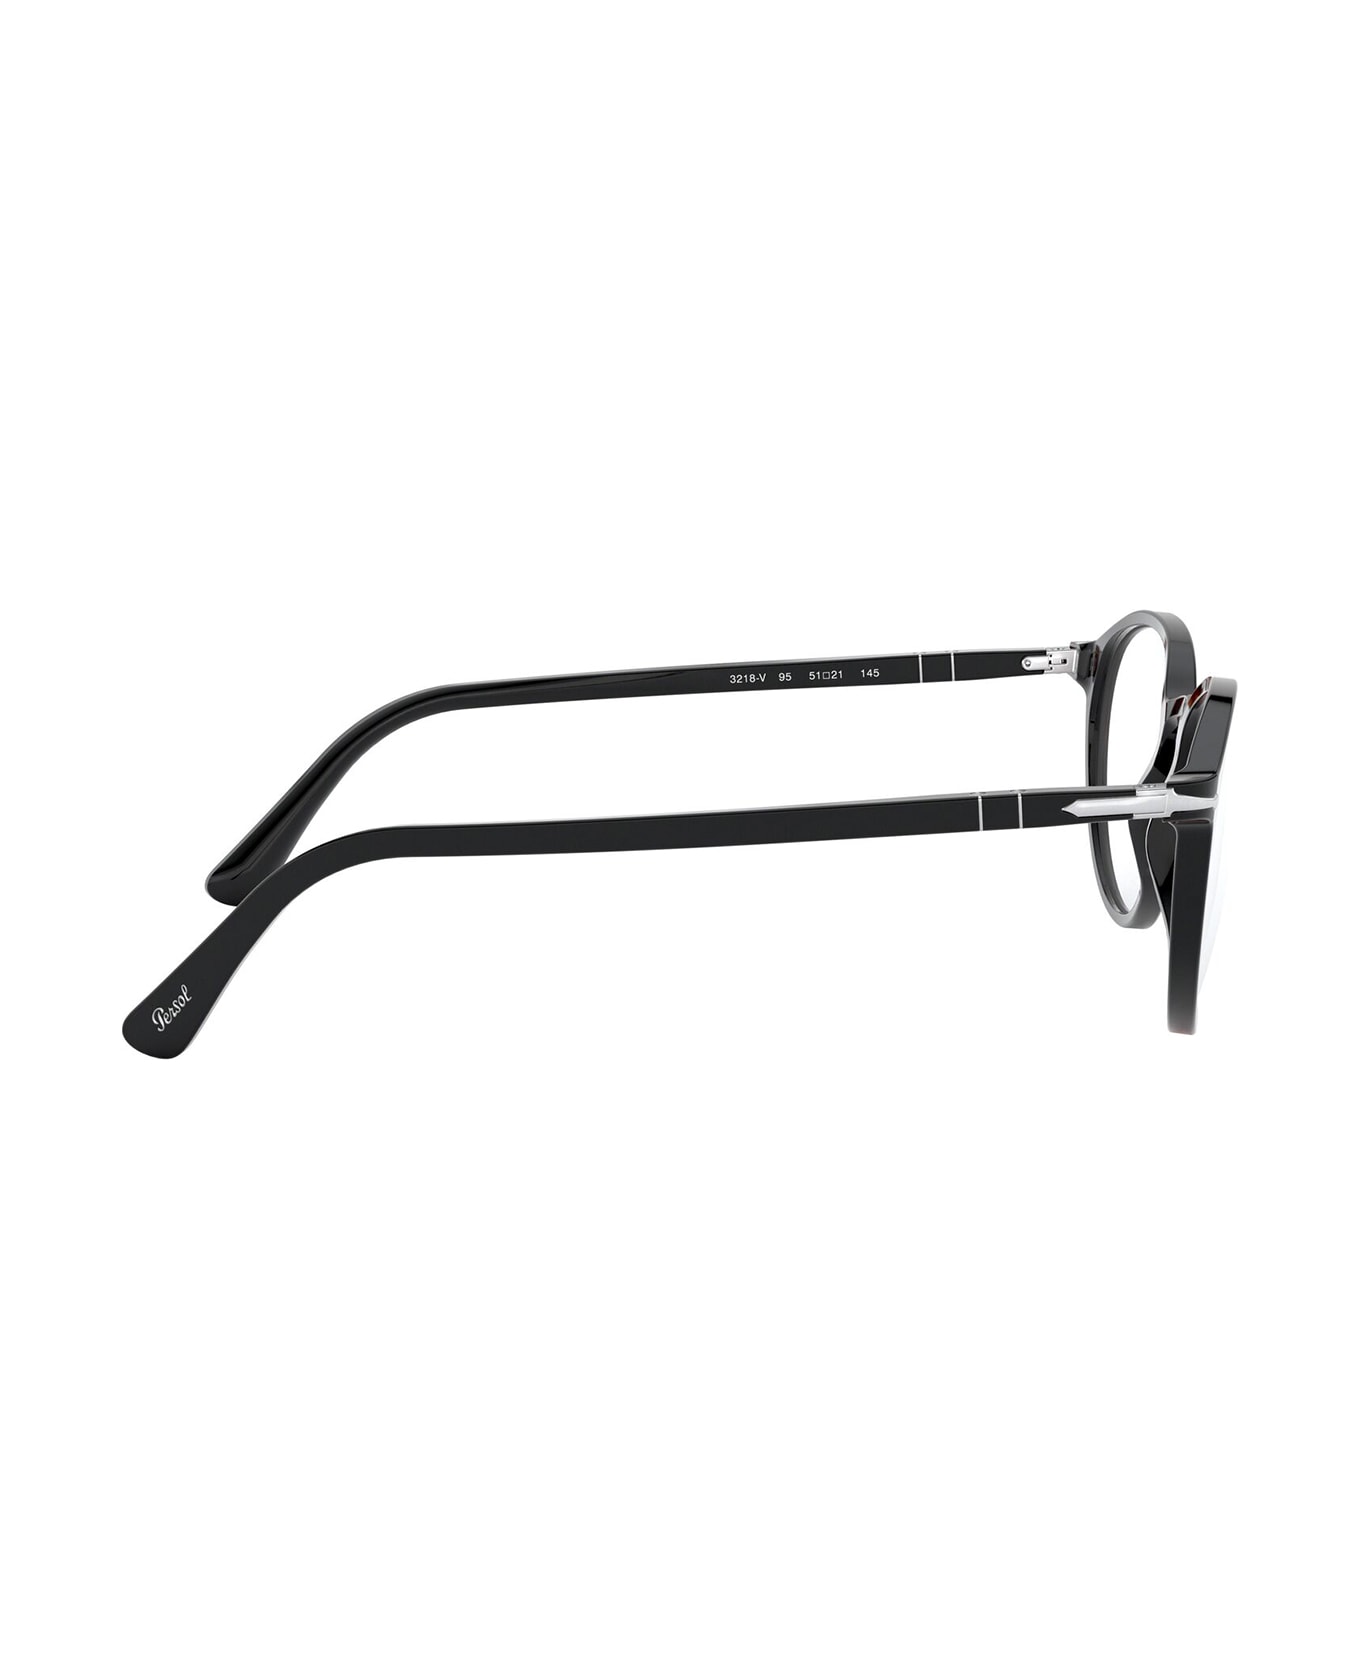 Persol Po3218v Black Glasses - Black